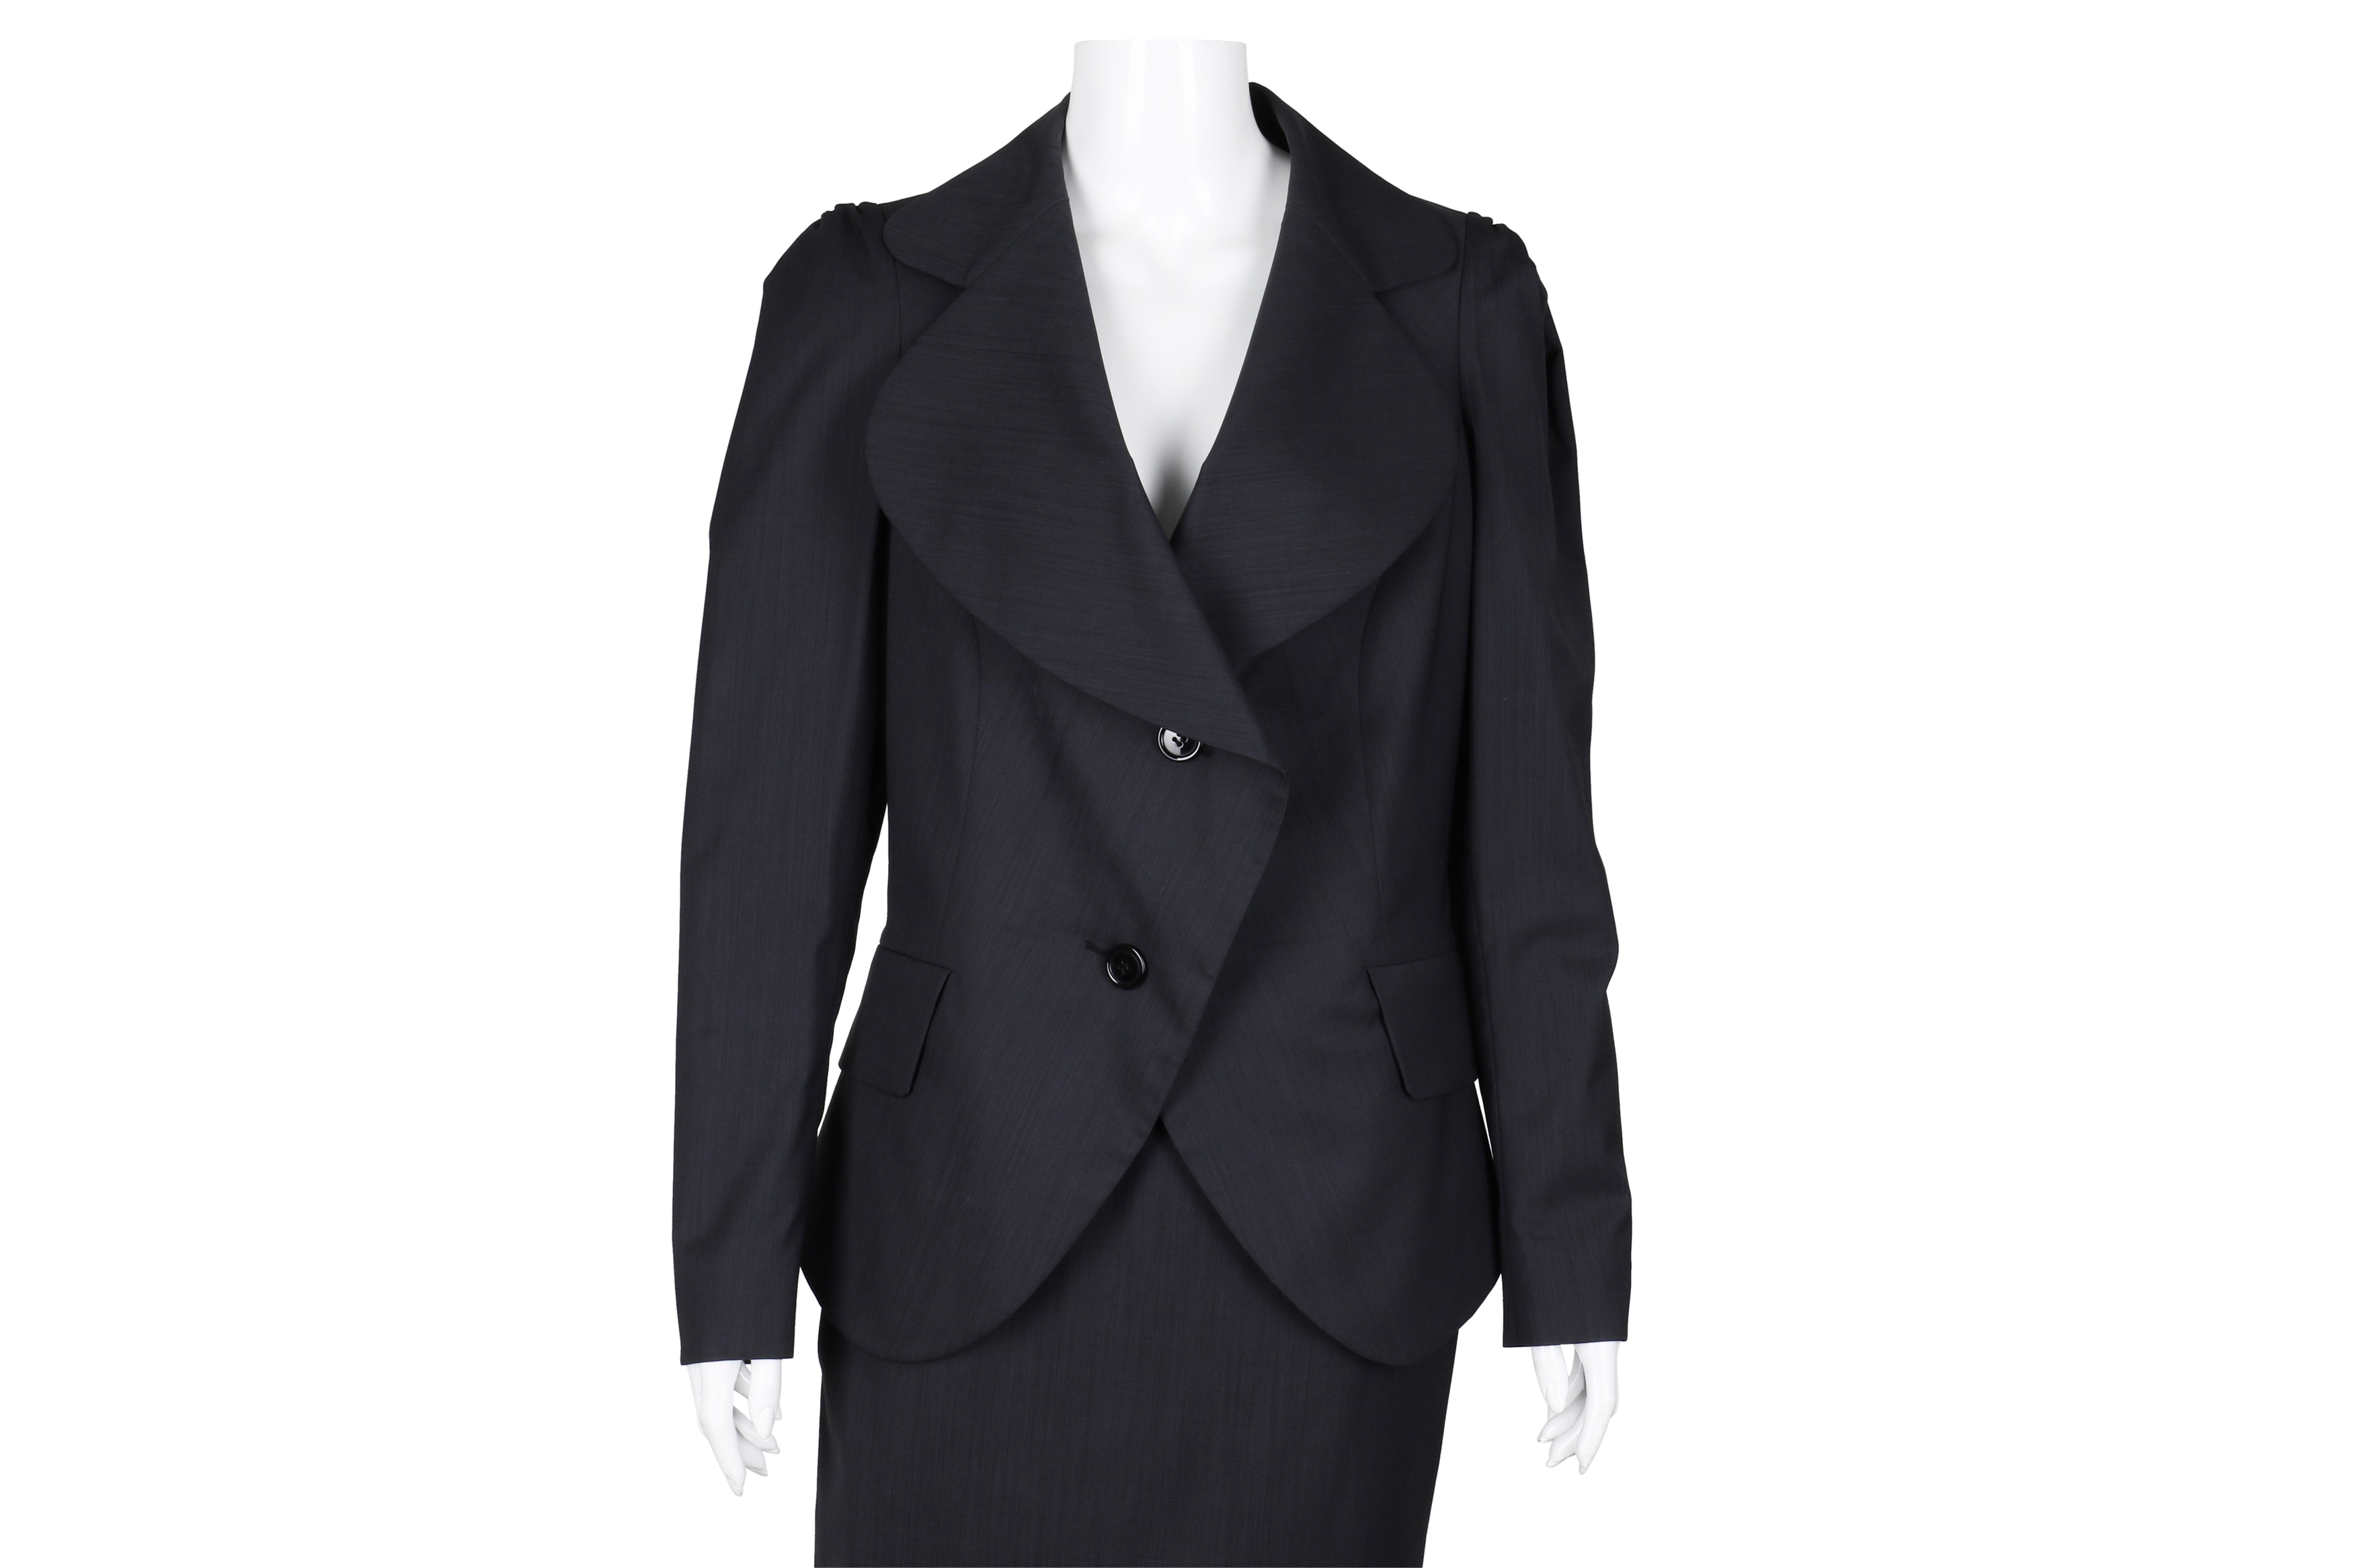 Lot 637 - Vivienne Westwood Grey Skirt Suit - Size